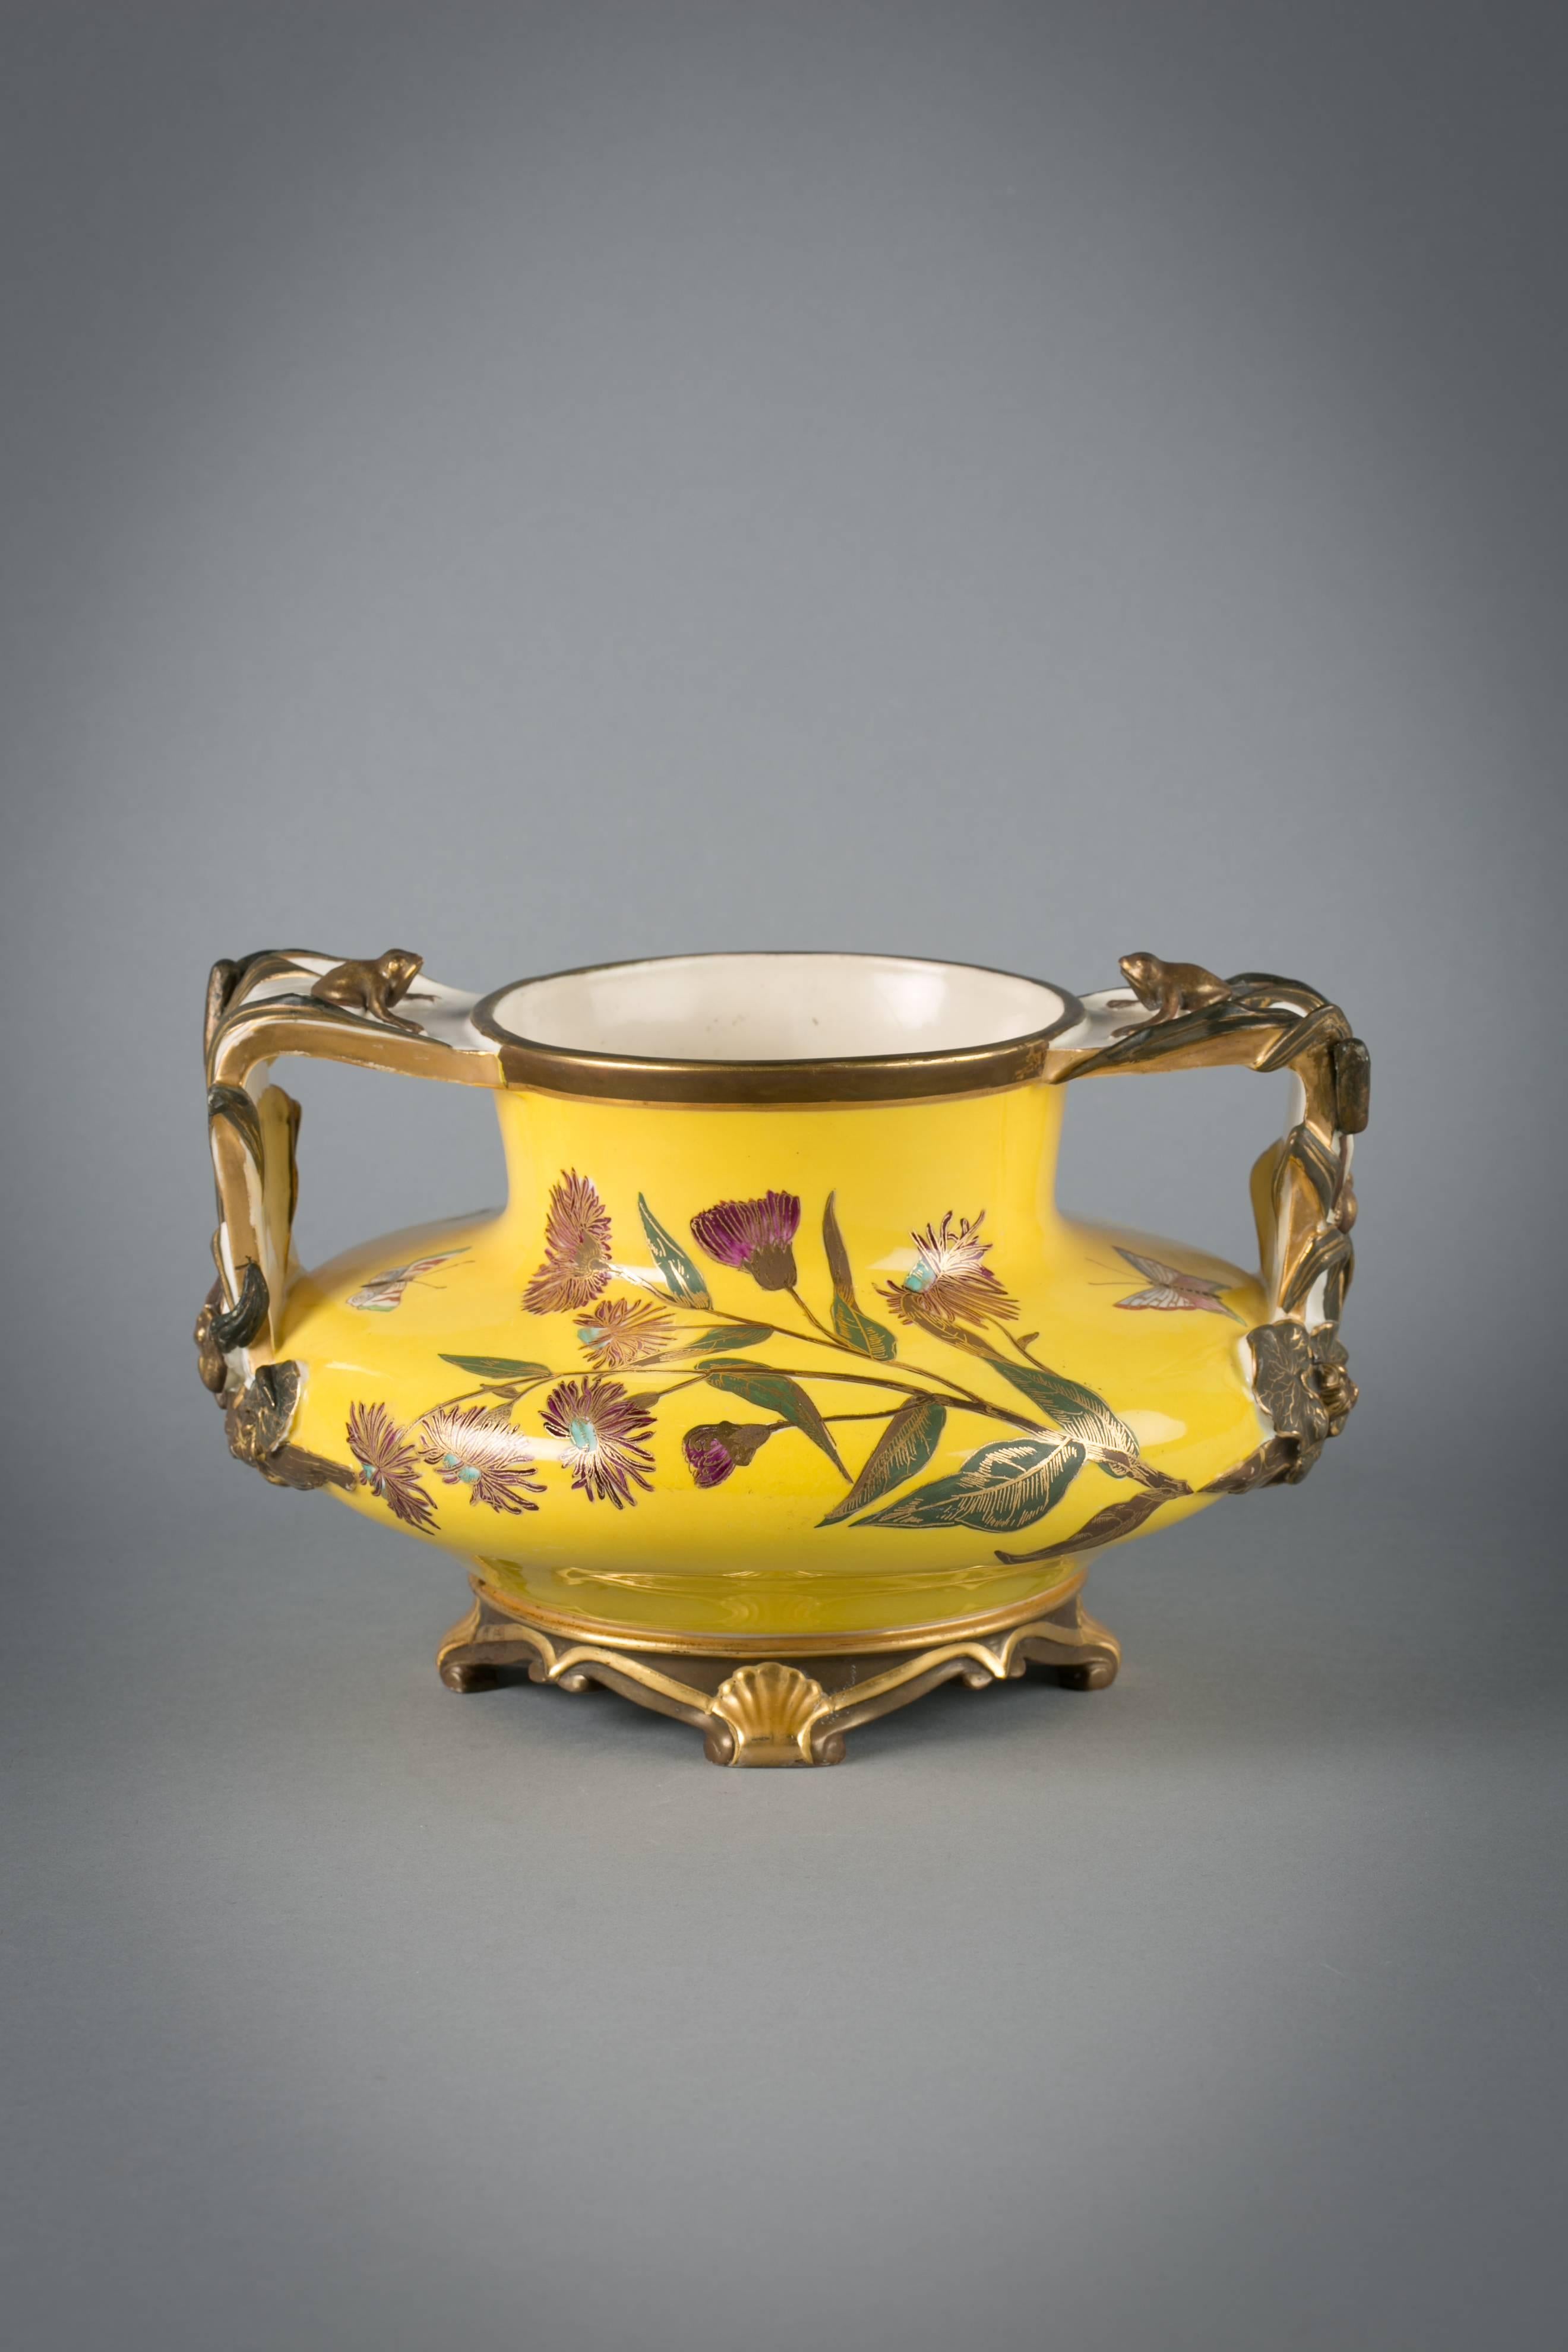 Vase Japonesque en porcelaine anglaise à fond jaune, Royal Worcester, daté de 1883

Chaque manche est orné de deux grenouilles, l'une grimpant sur le côté et l'autre étant assise au sommet du manche.